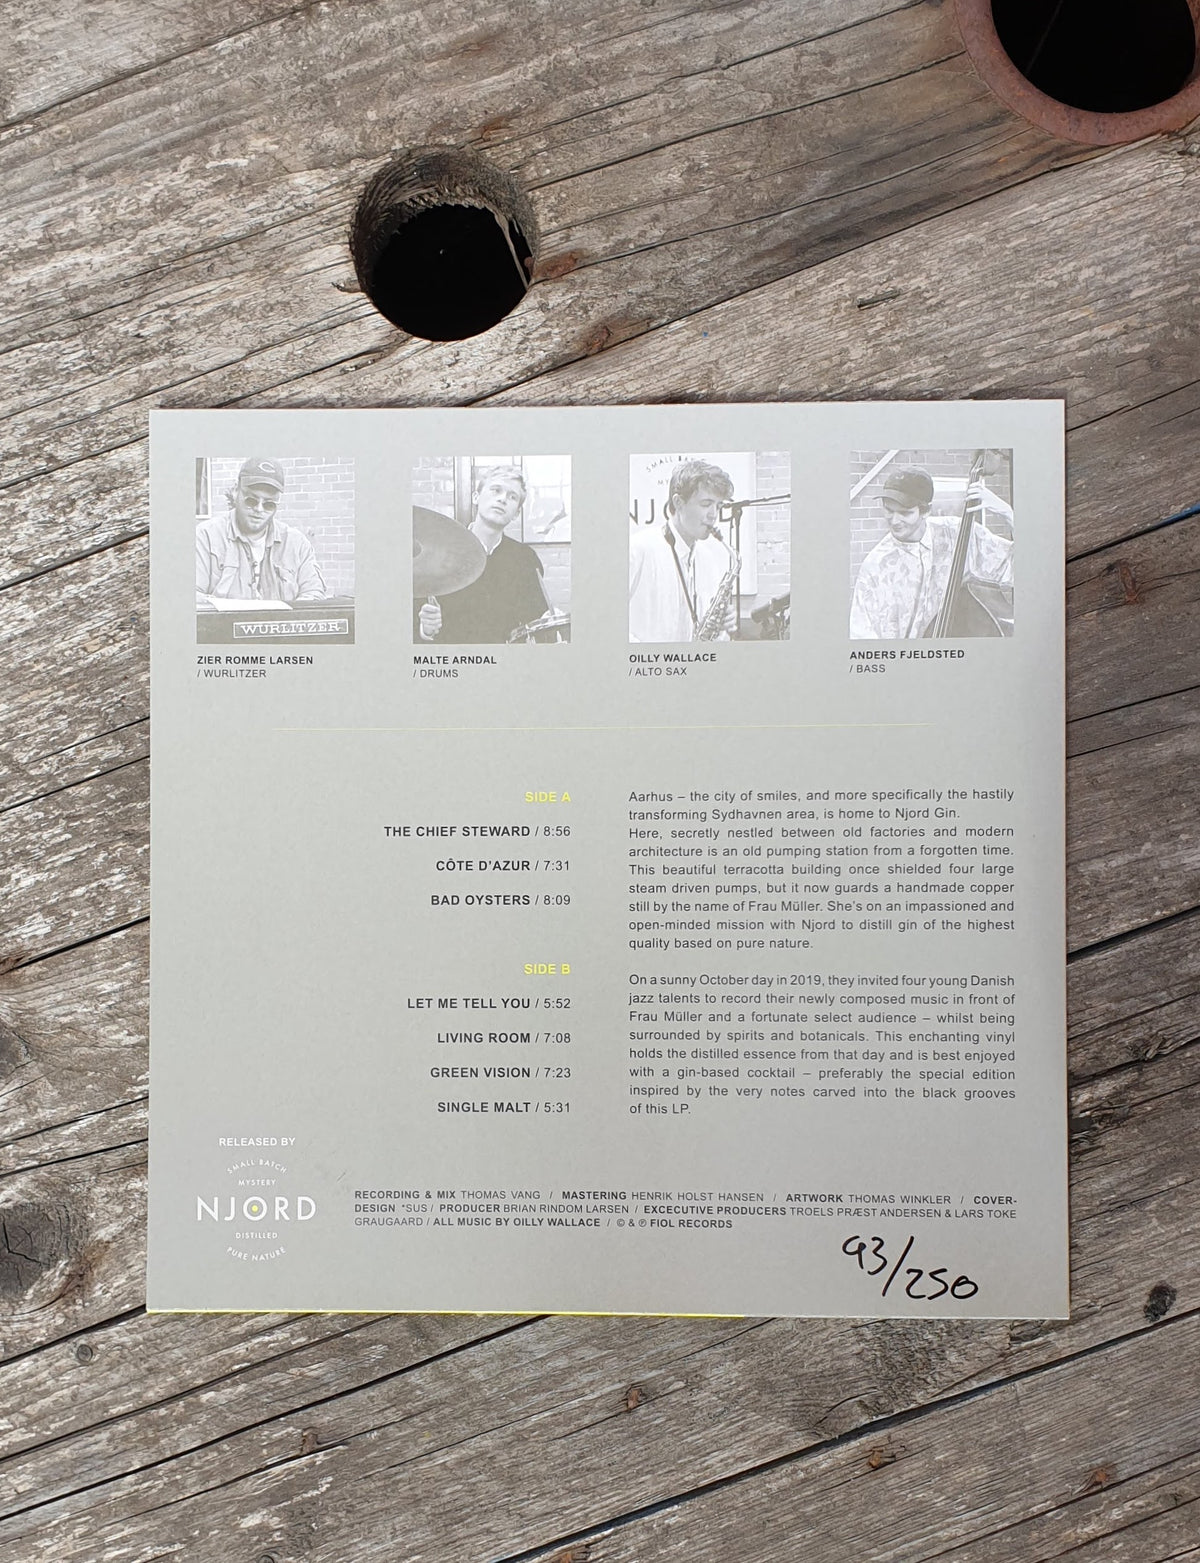 Olliy Wallace Quartet - live jazz album vinyl-back